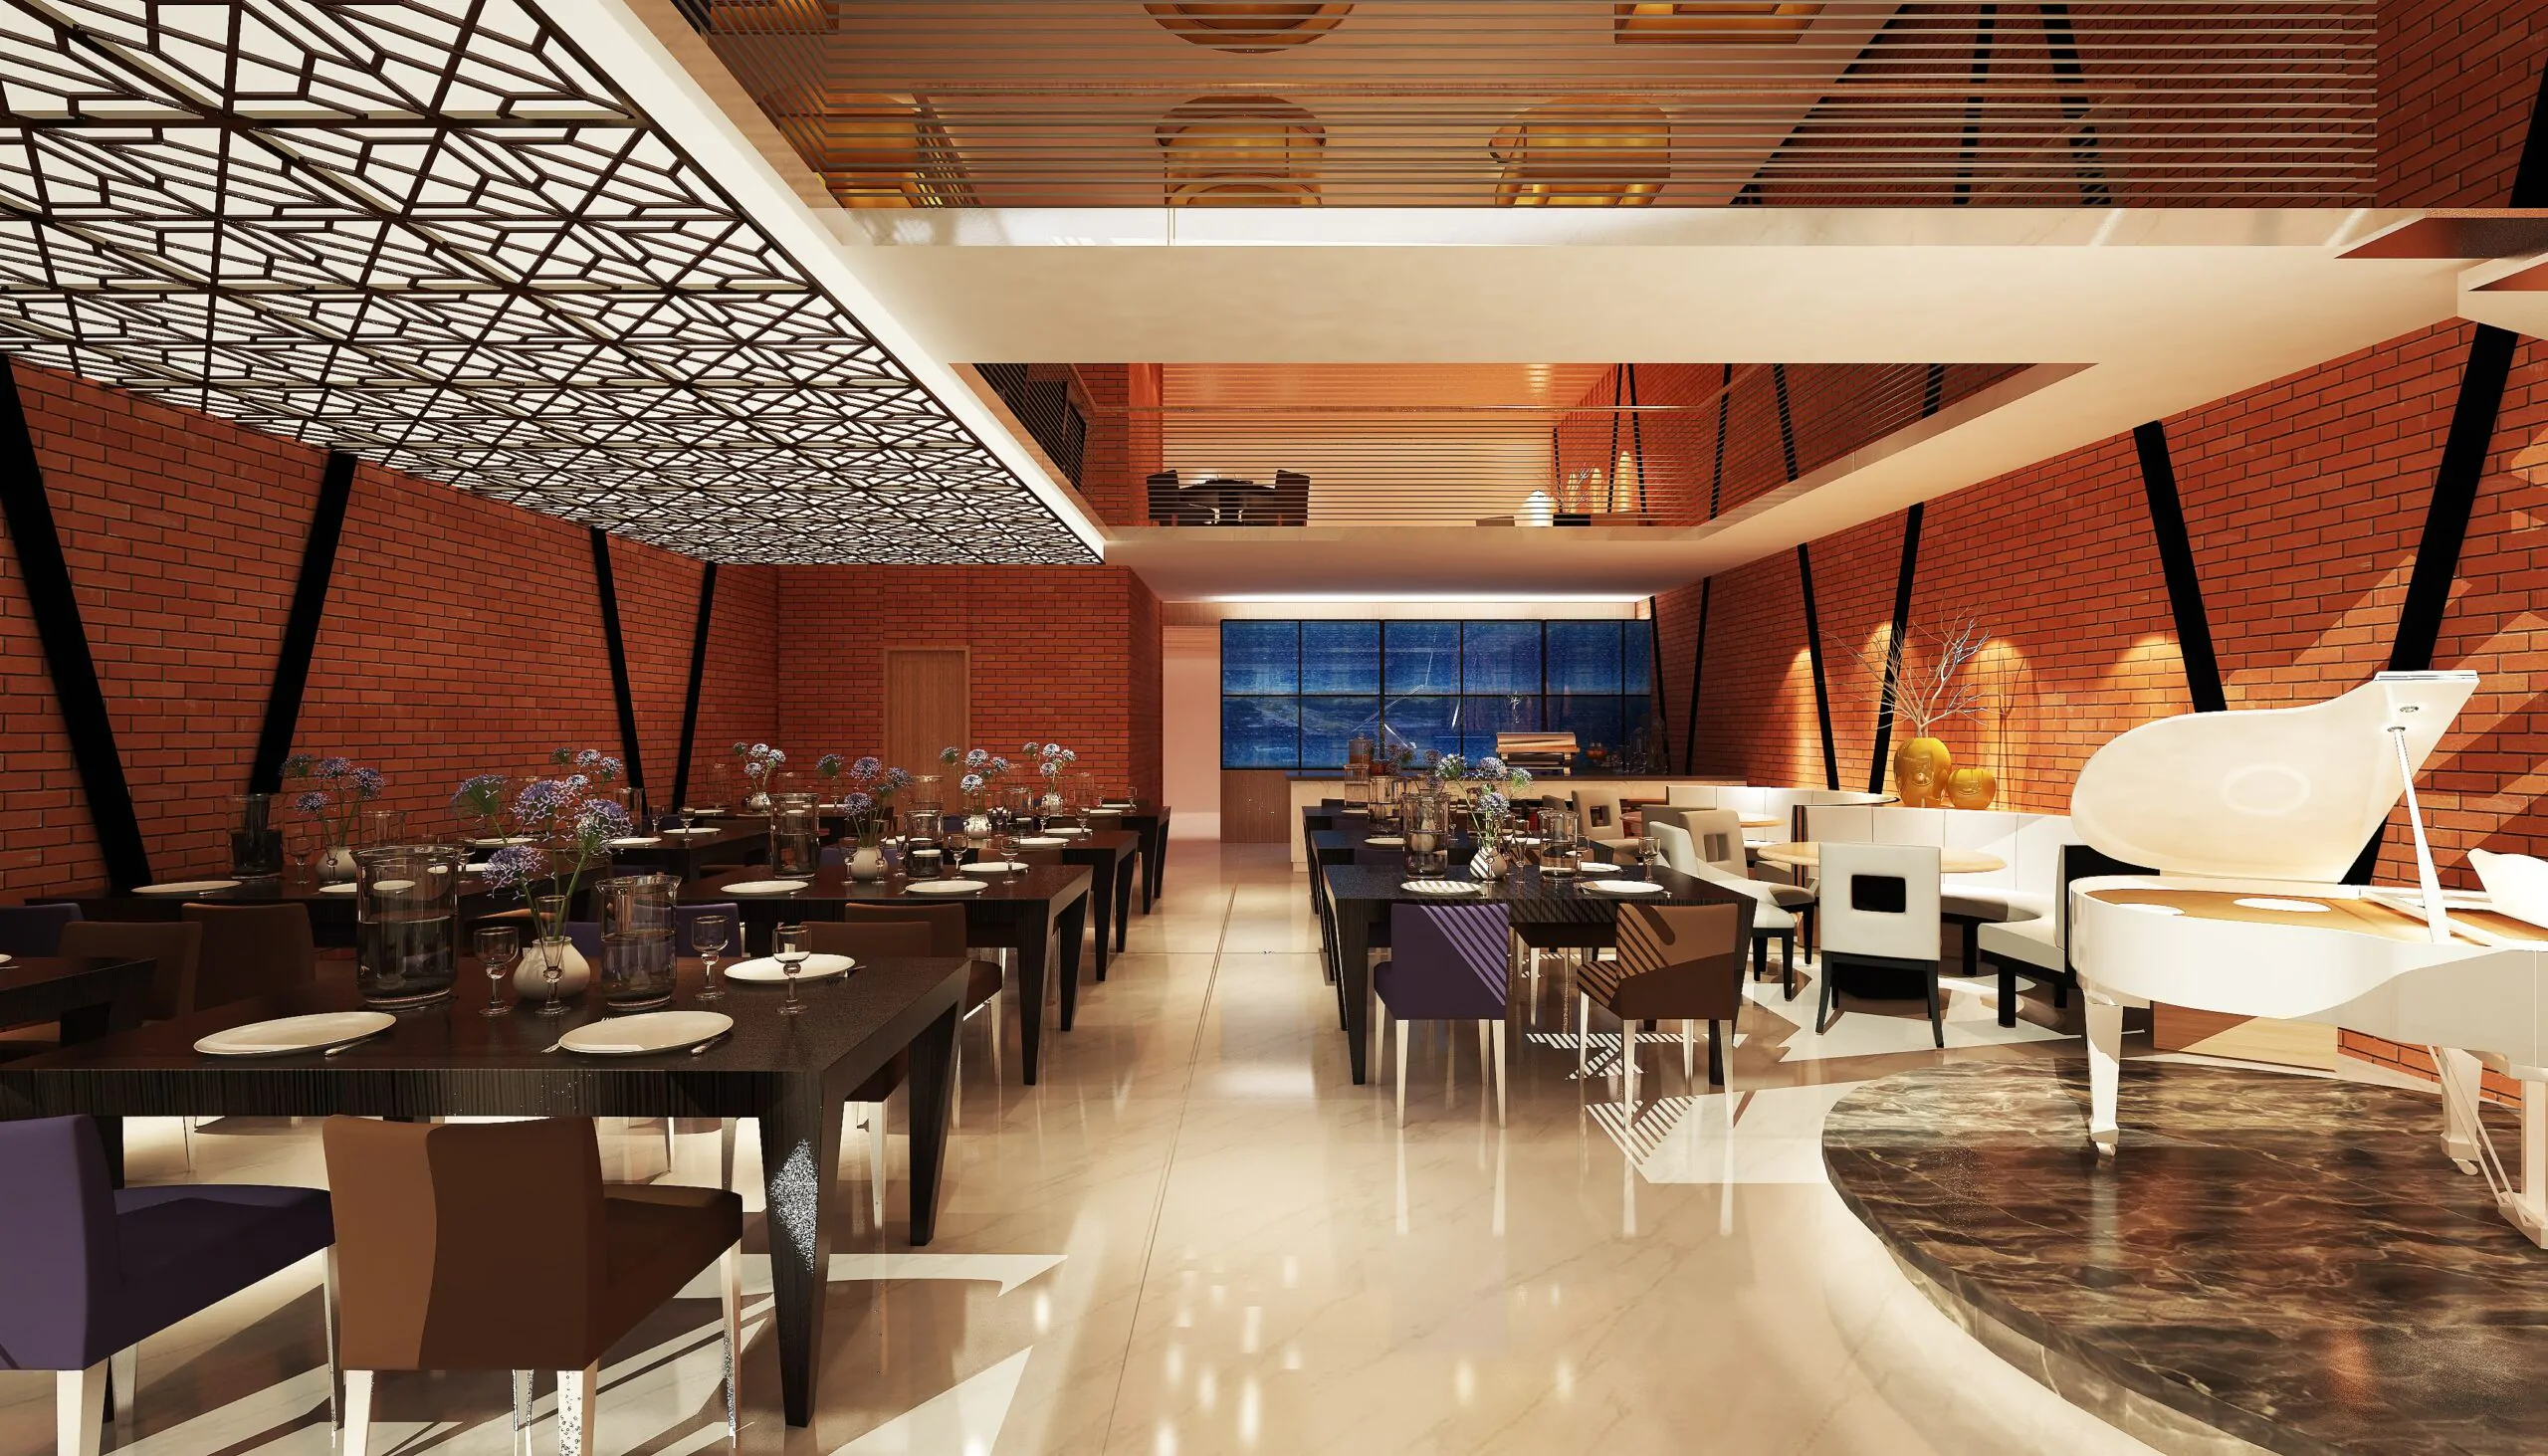 Tangail Restaurant CBFCC 3D Design (9)